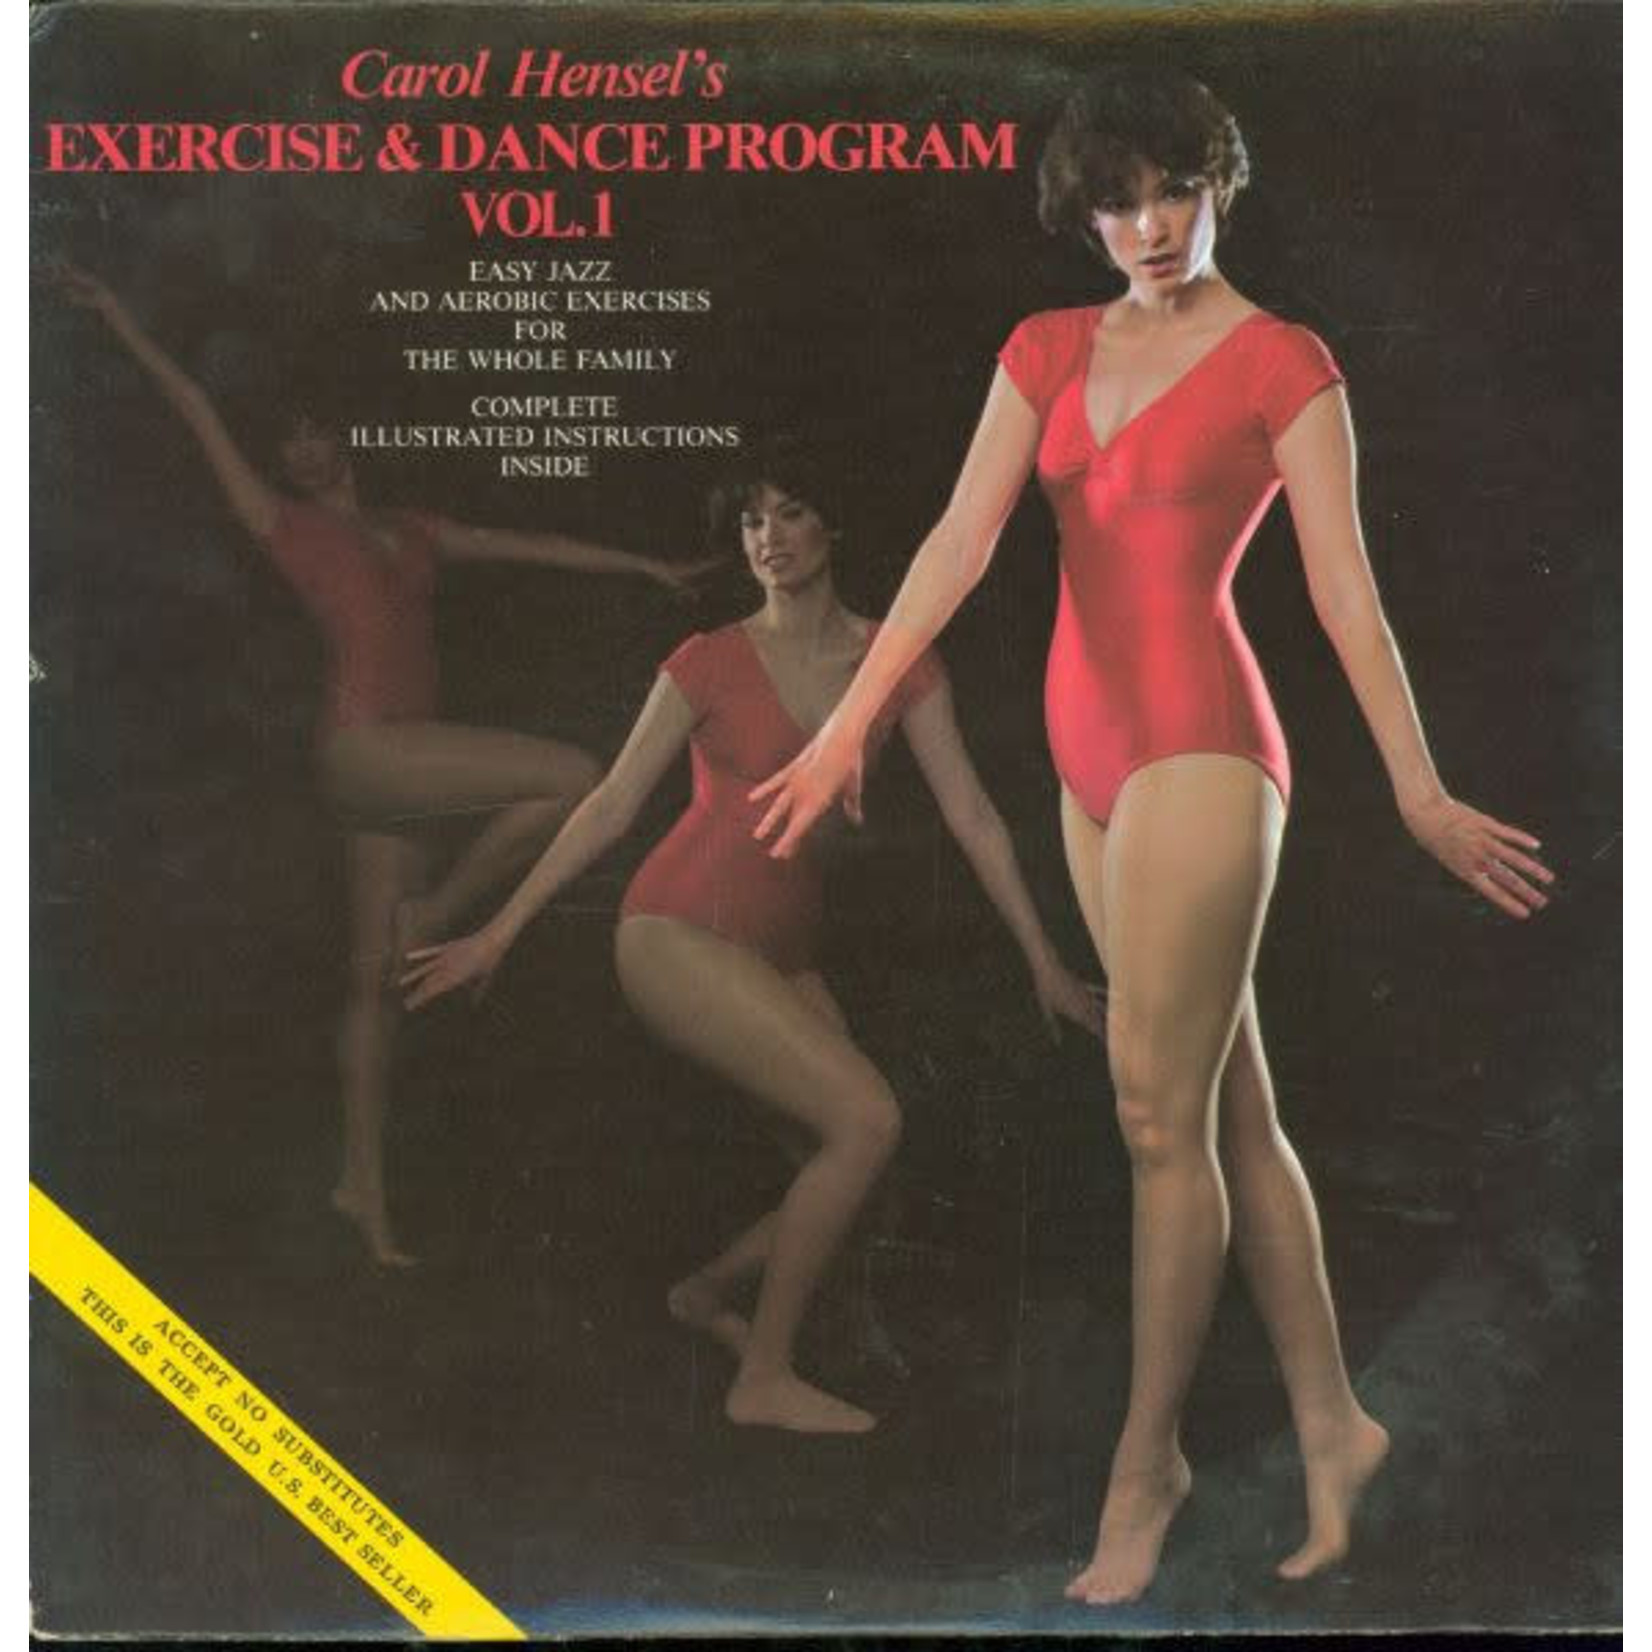 Carol Hensel – Carol Hensel's Exercise & Dance Program, Vol. 1 (VG)